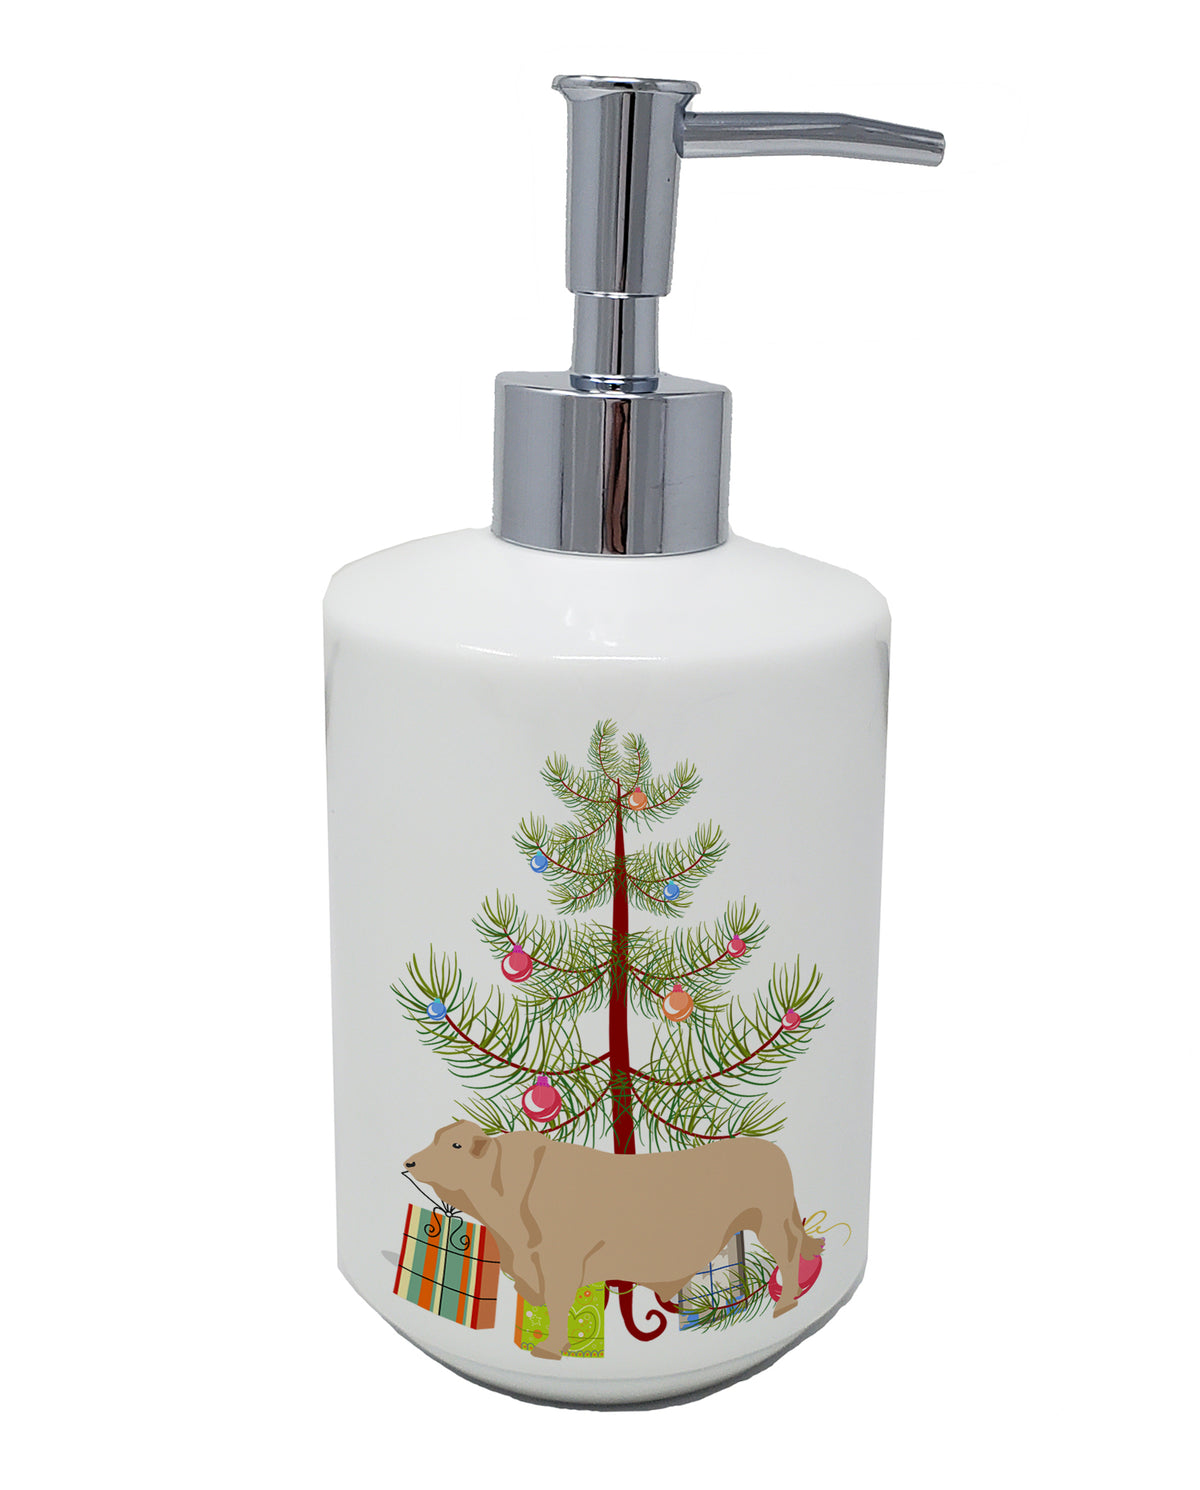 Buy this Charolais Cow Christmas Ceramic Soap Dispenser